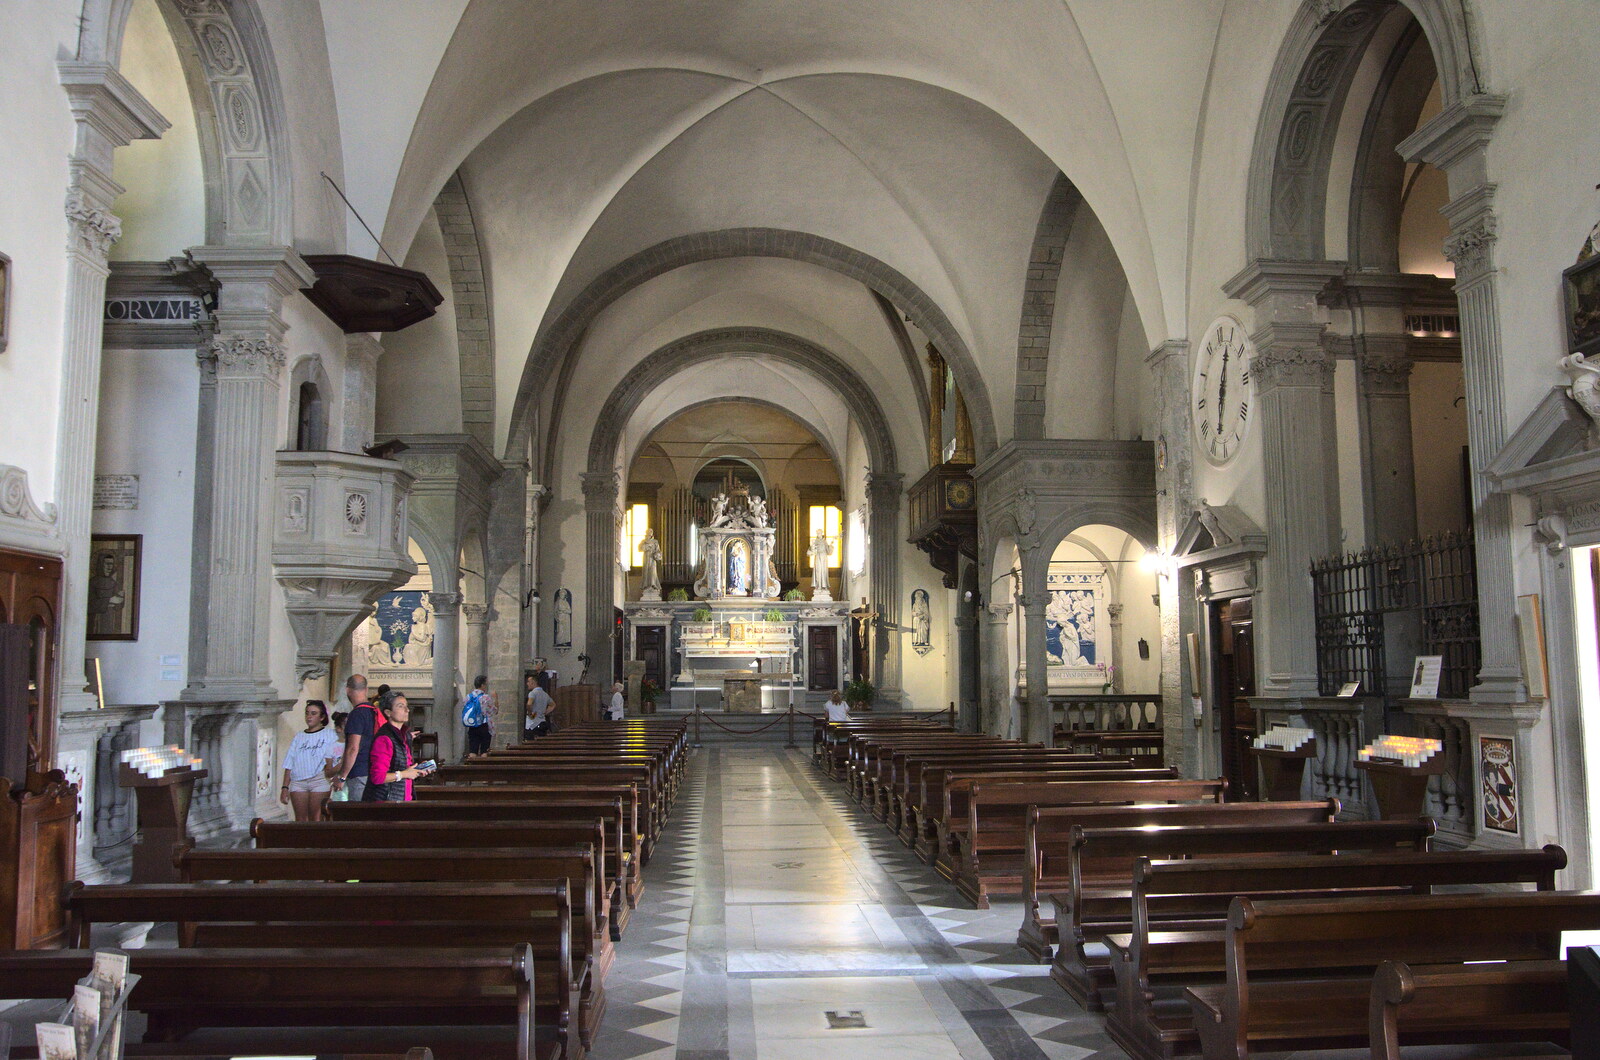 Castiglio Del Lago and Santuario della Verna, Umbria and Tuscany, Italy - 1st September 2022: Inside one of the churches of La Verna